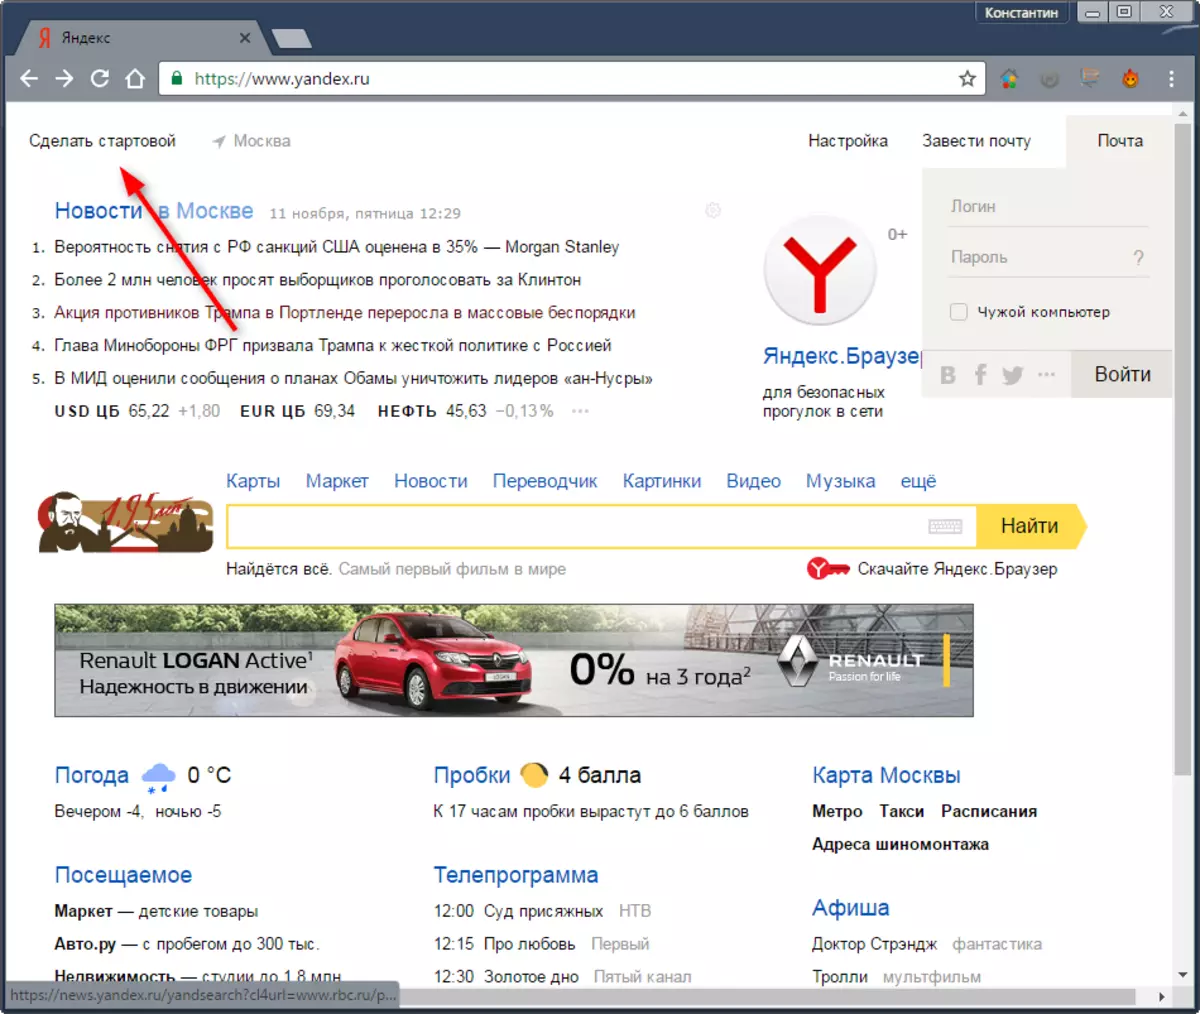 Ahoana ny fomba hanombohan'ny Yandex manomboka pejy 1